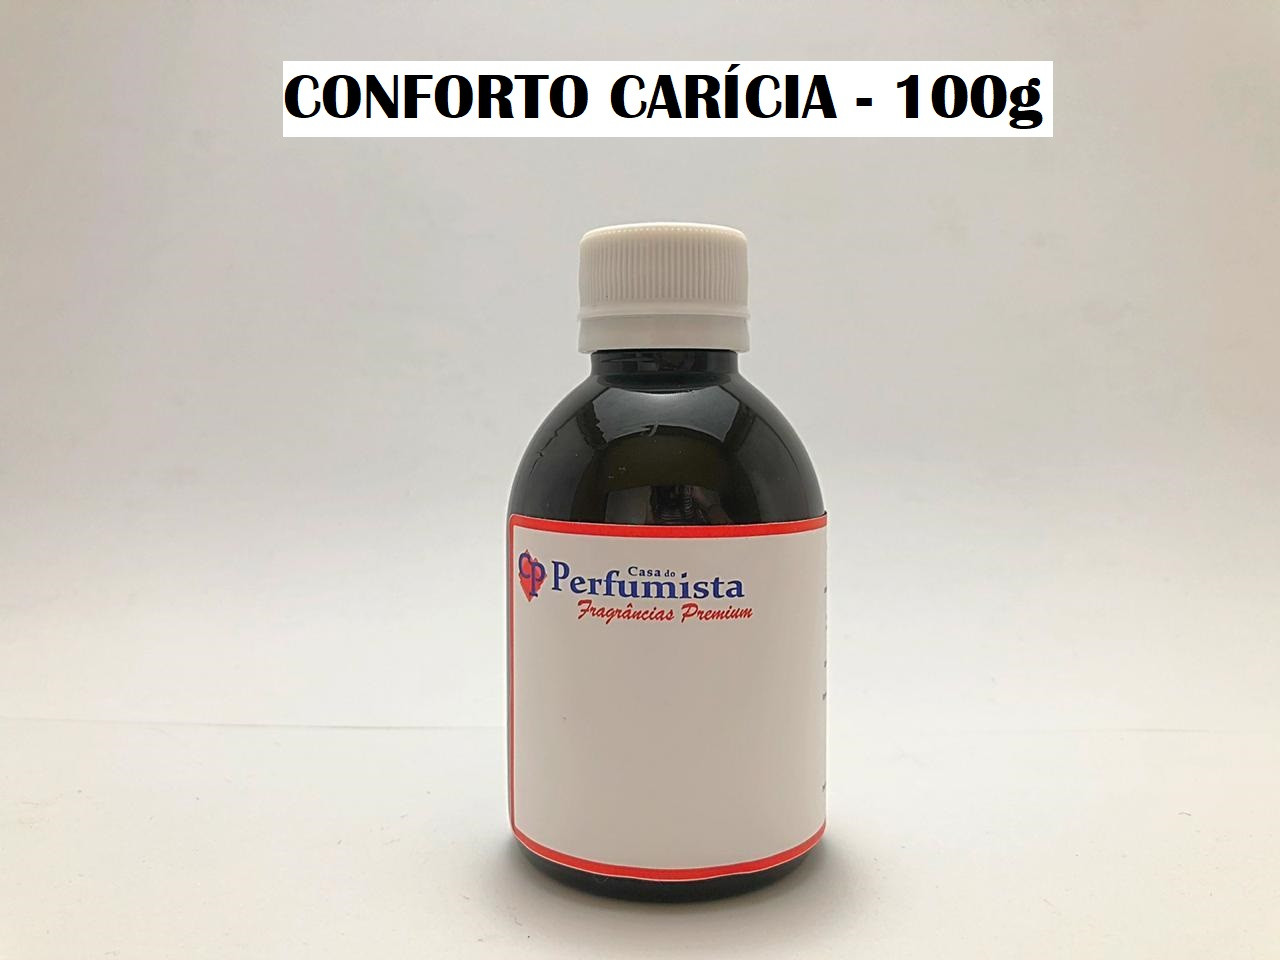 CONFORTO CARÍCIA - 100g